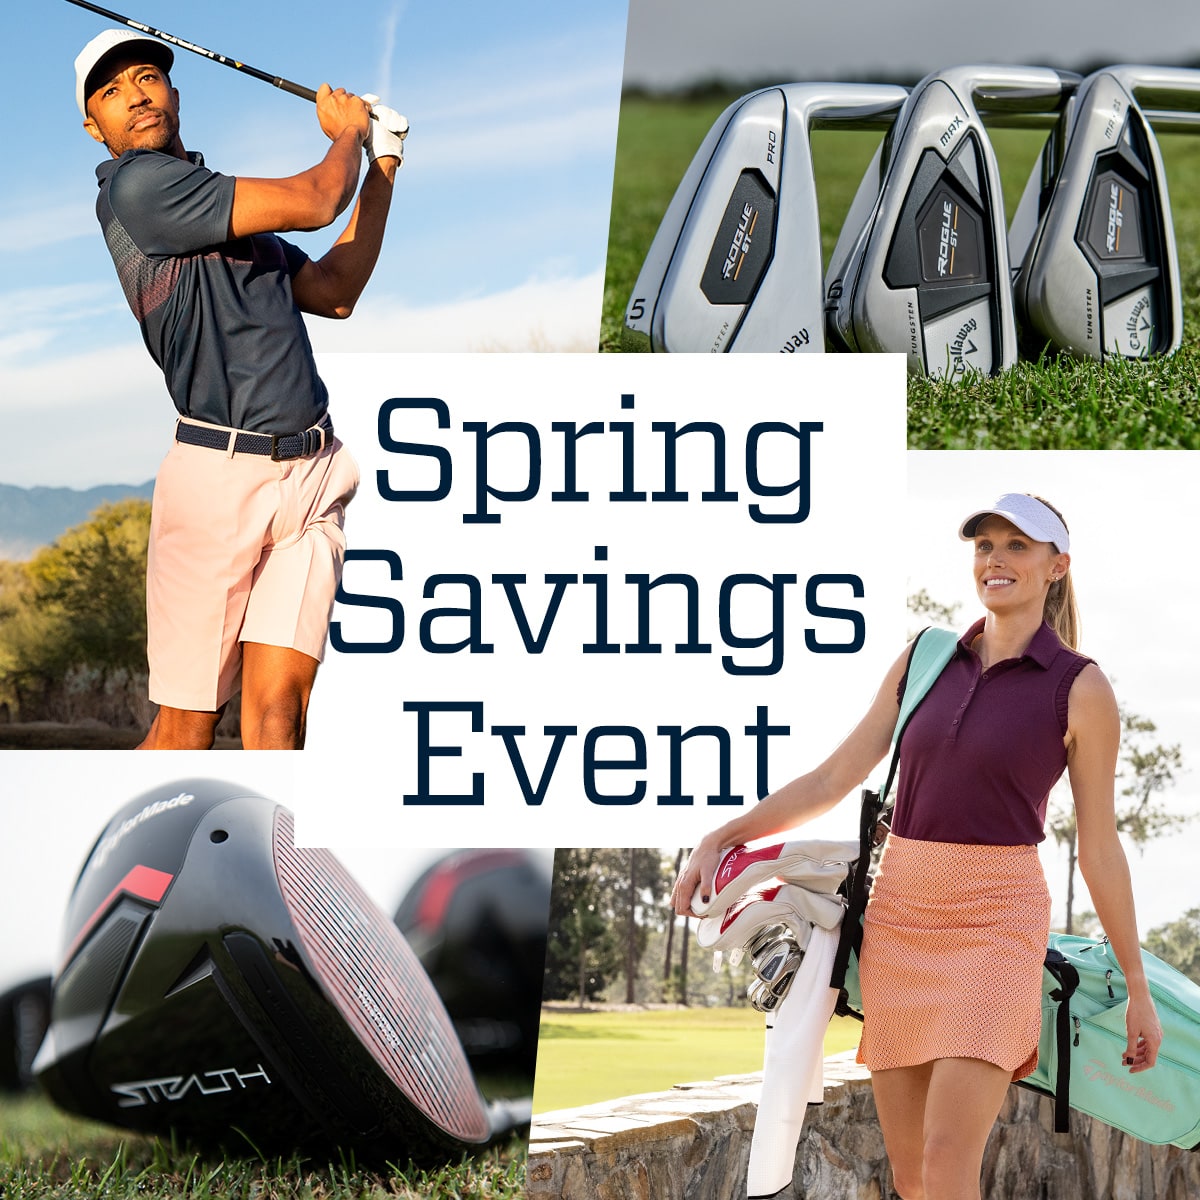  Spring savings event